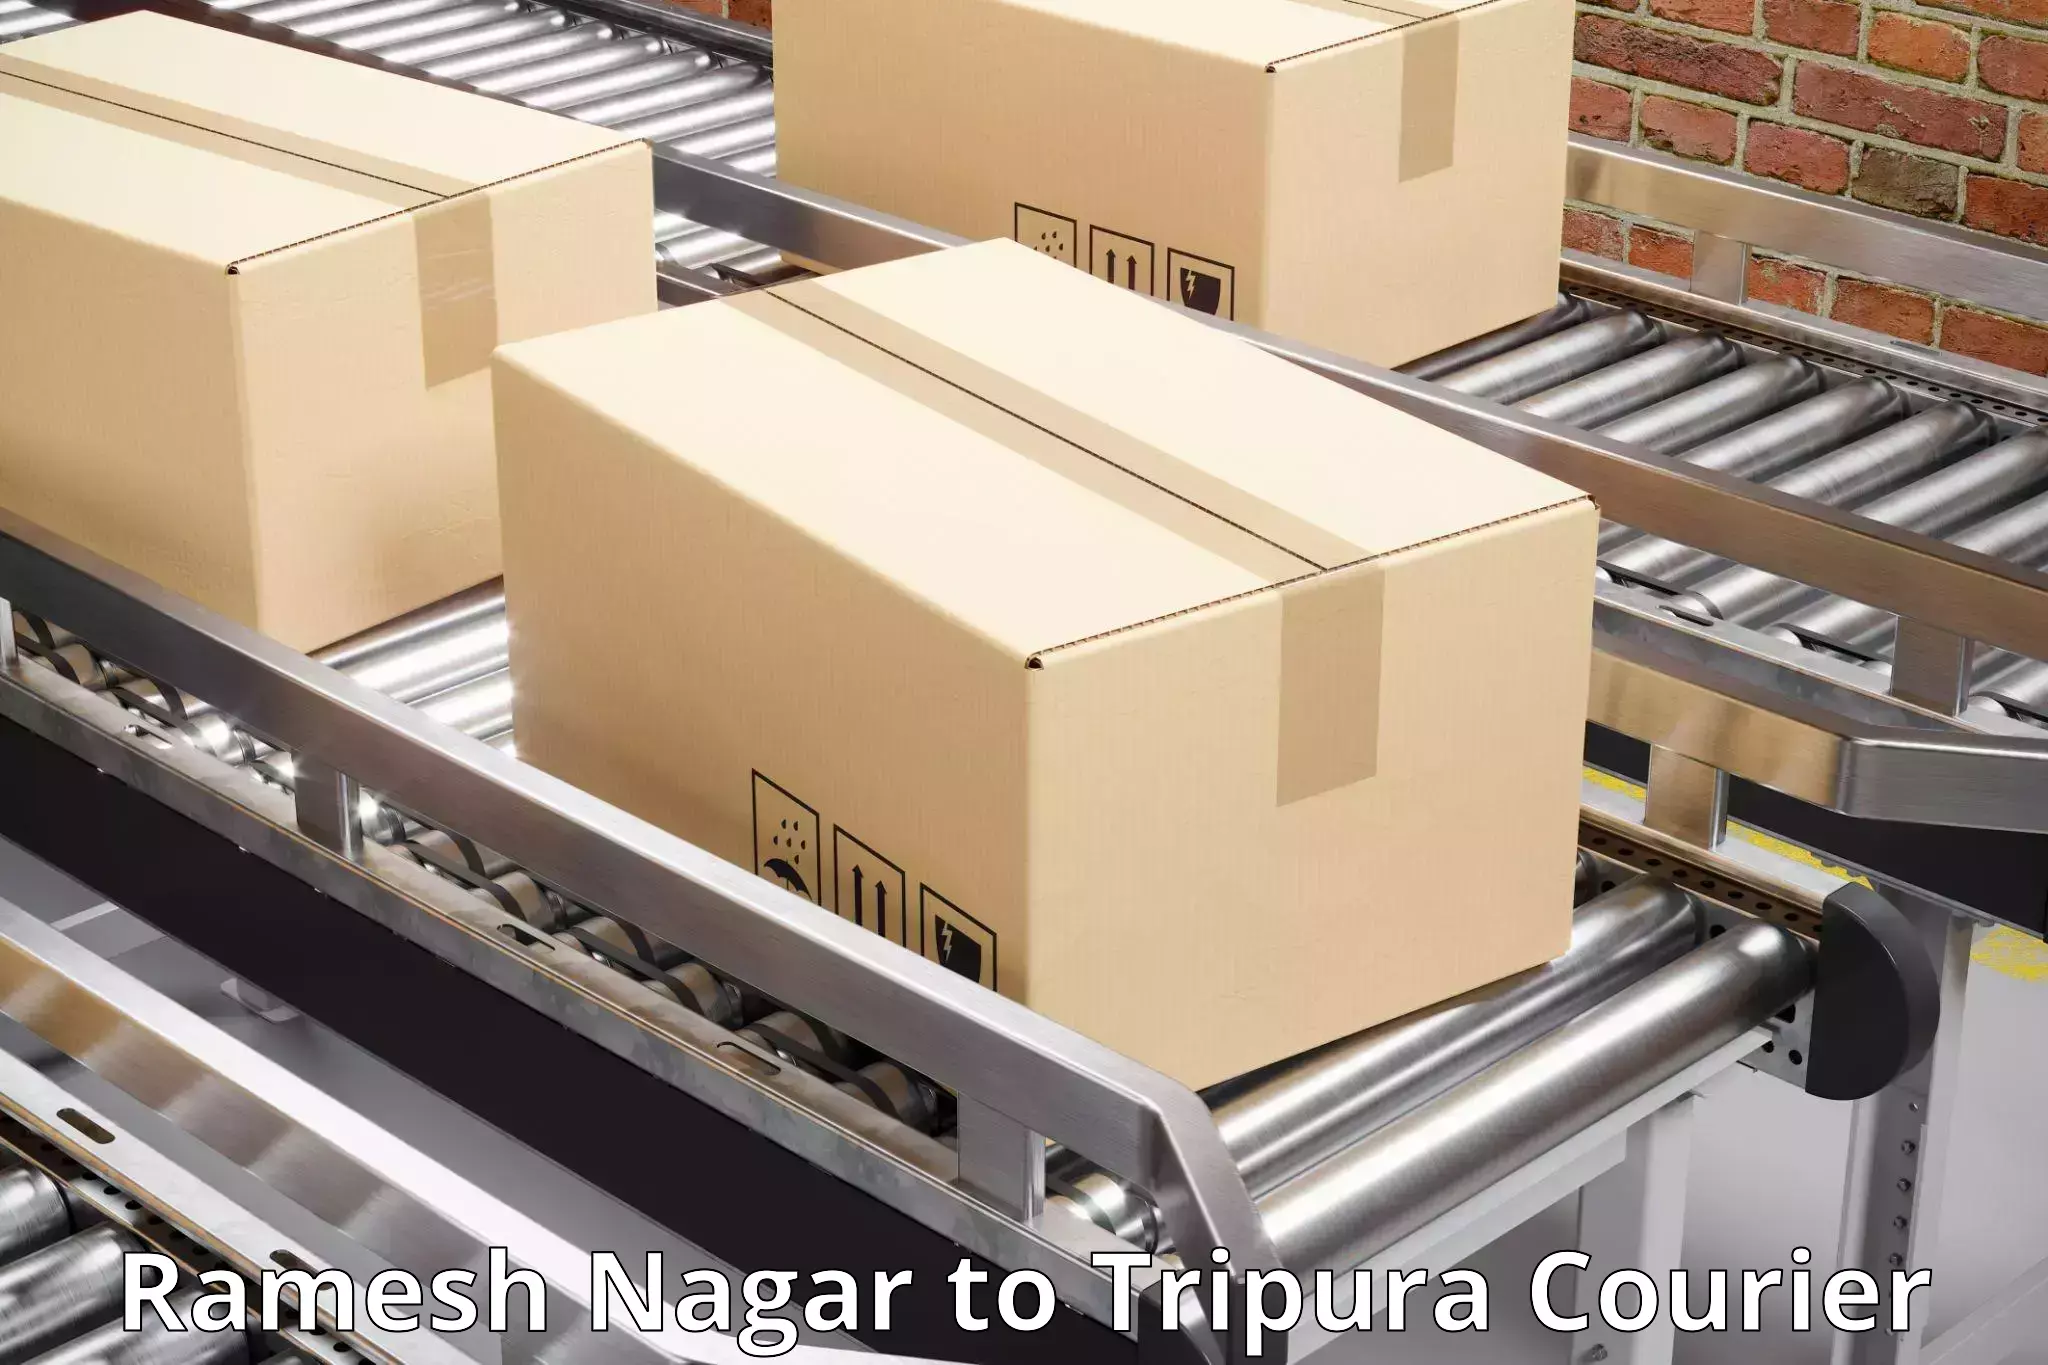 Urgent courier needs Ramesh Nagar to Manughat